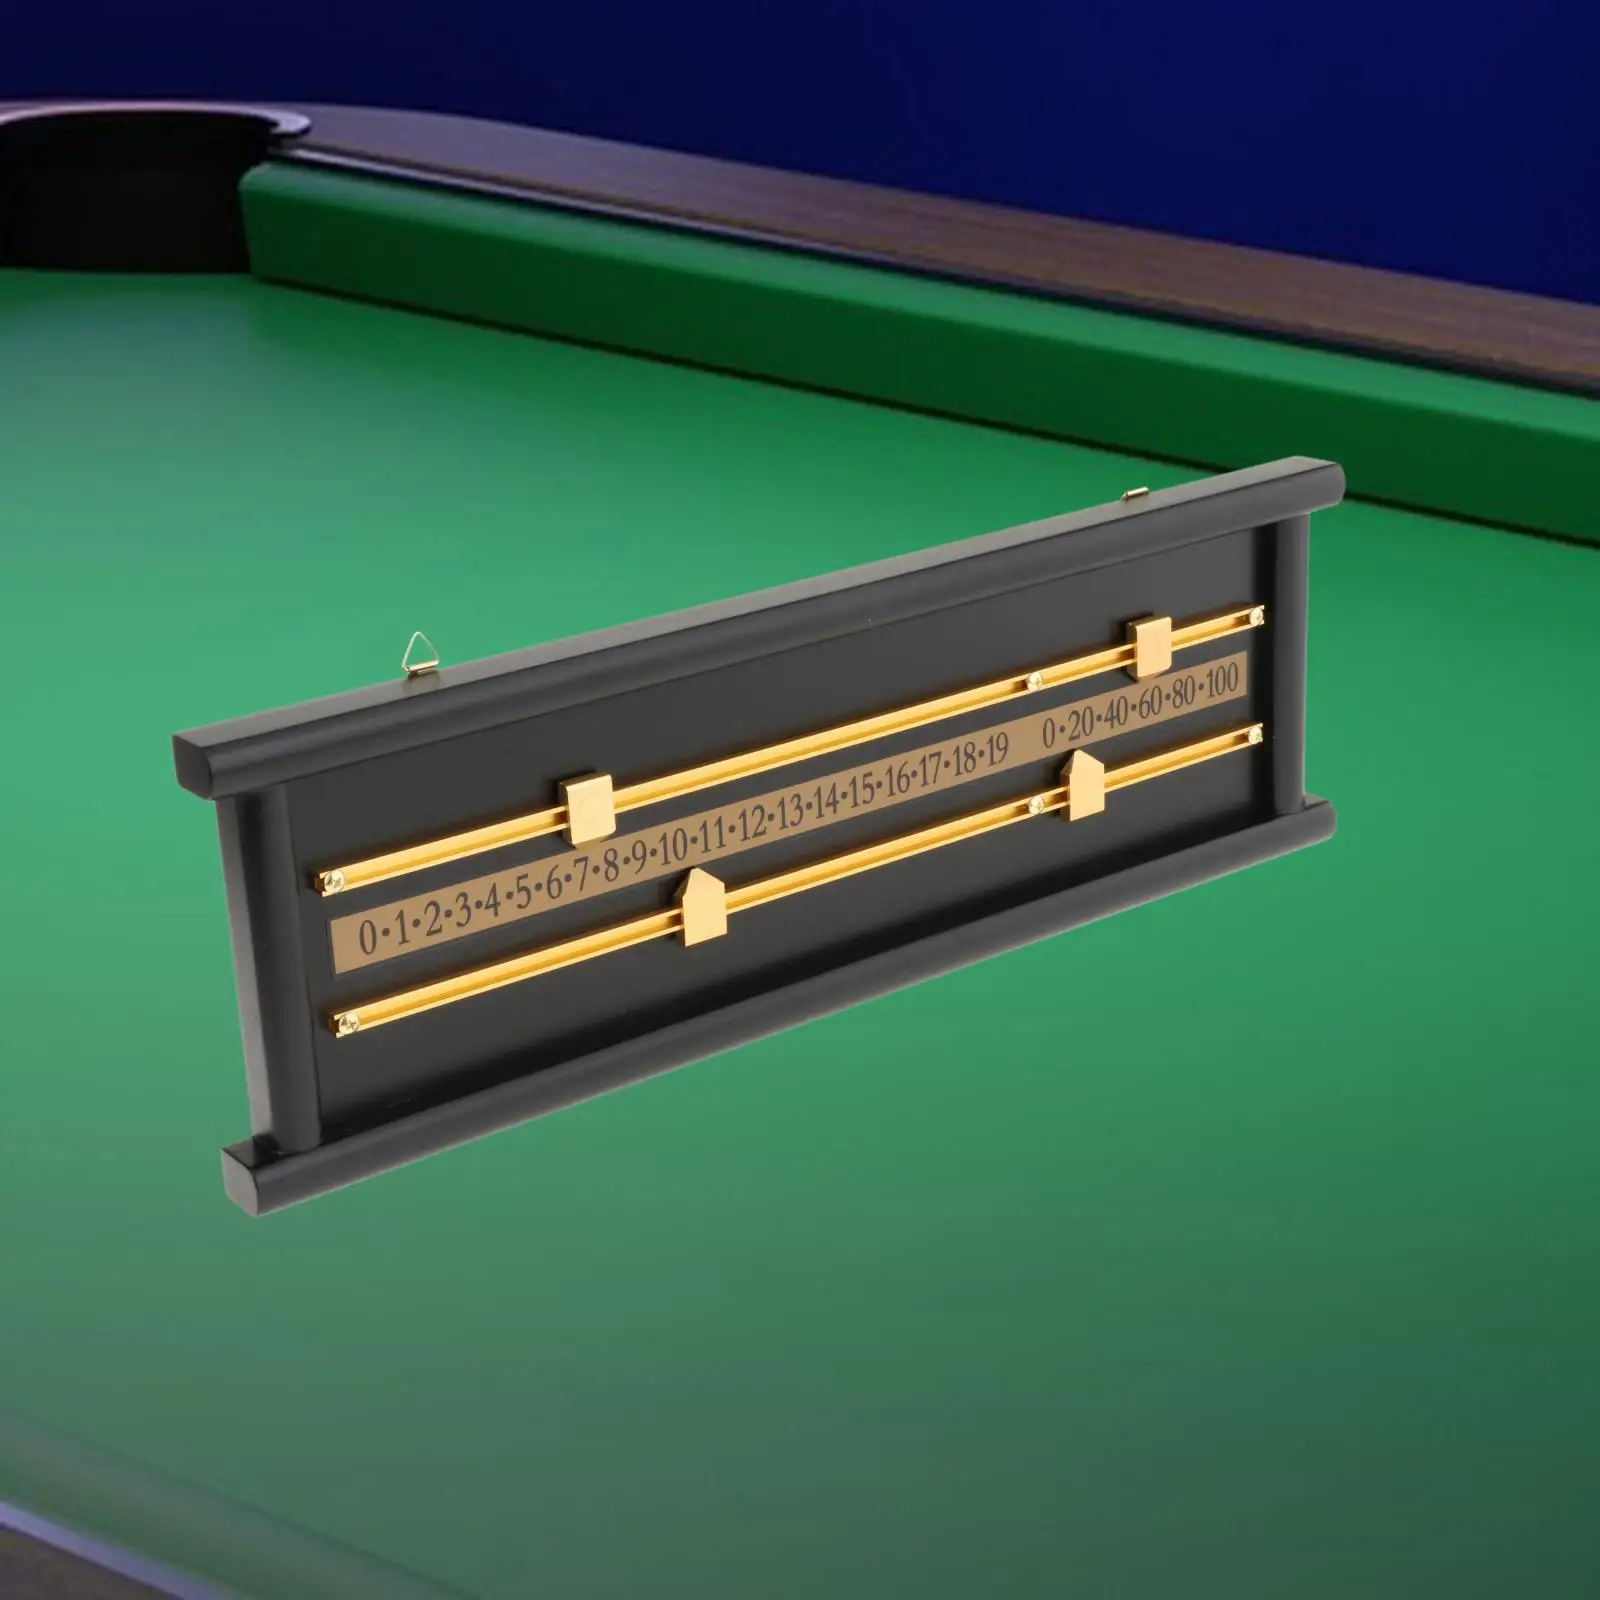 Shuffleboard Wall Mounted Scoreboard Snooker Score Keeper Accessories Device